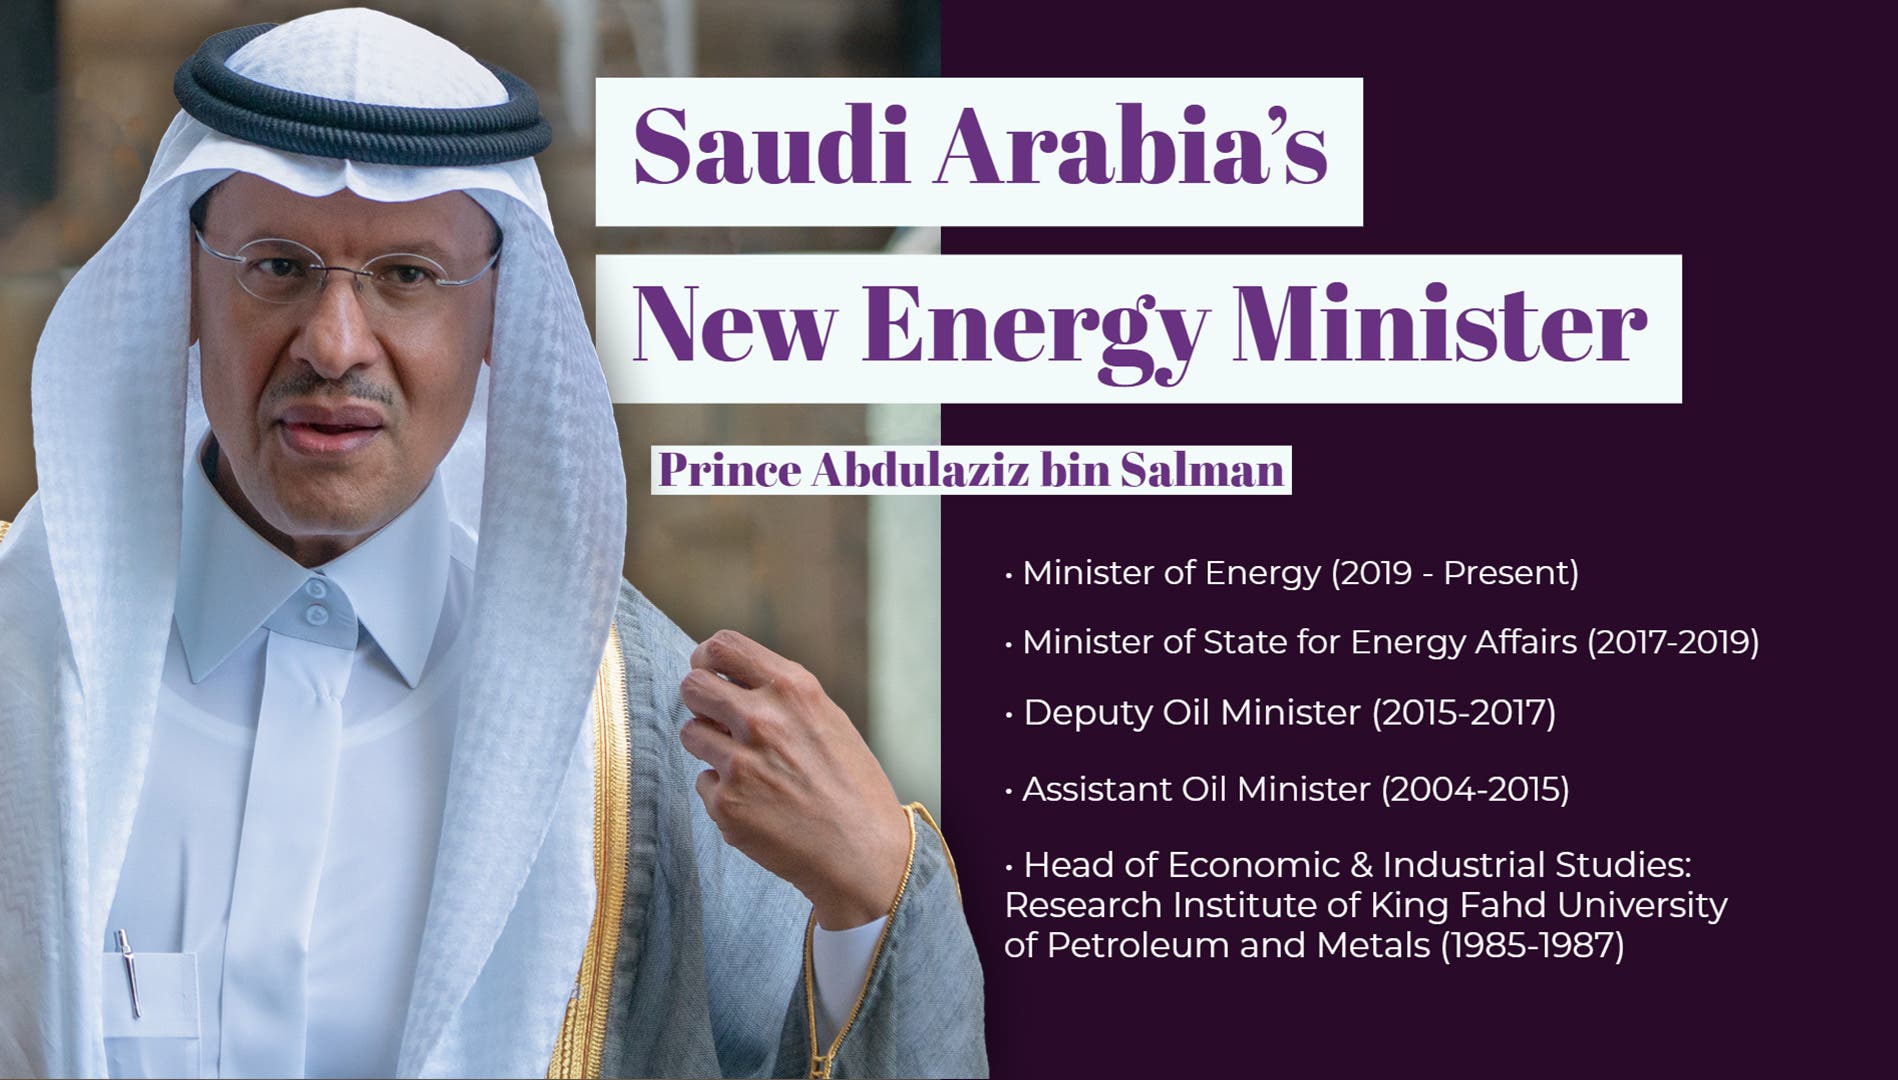 Prince Abdulaziz info